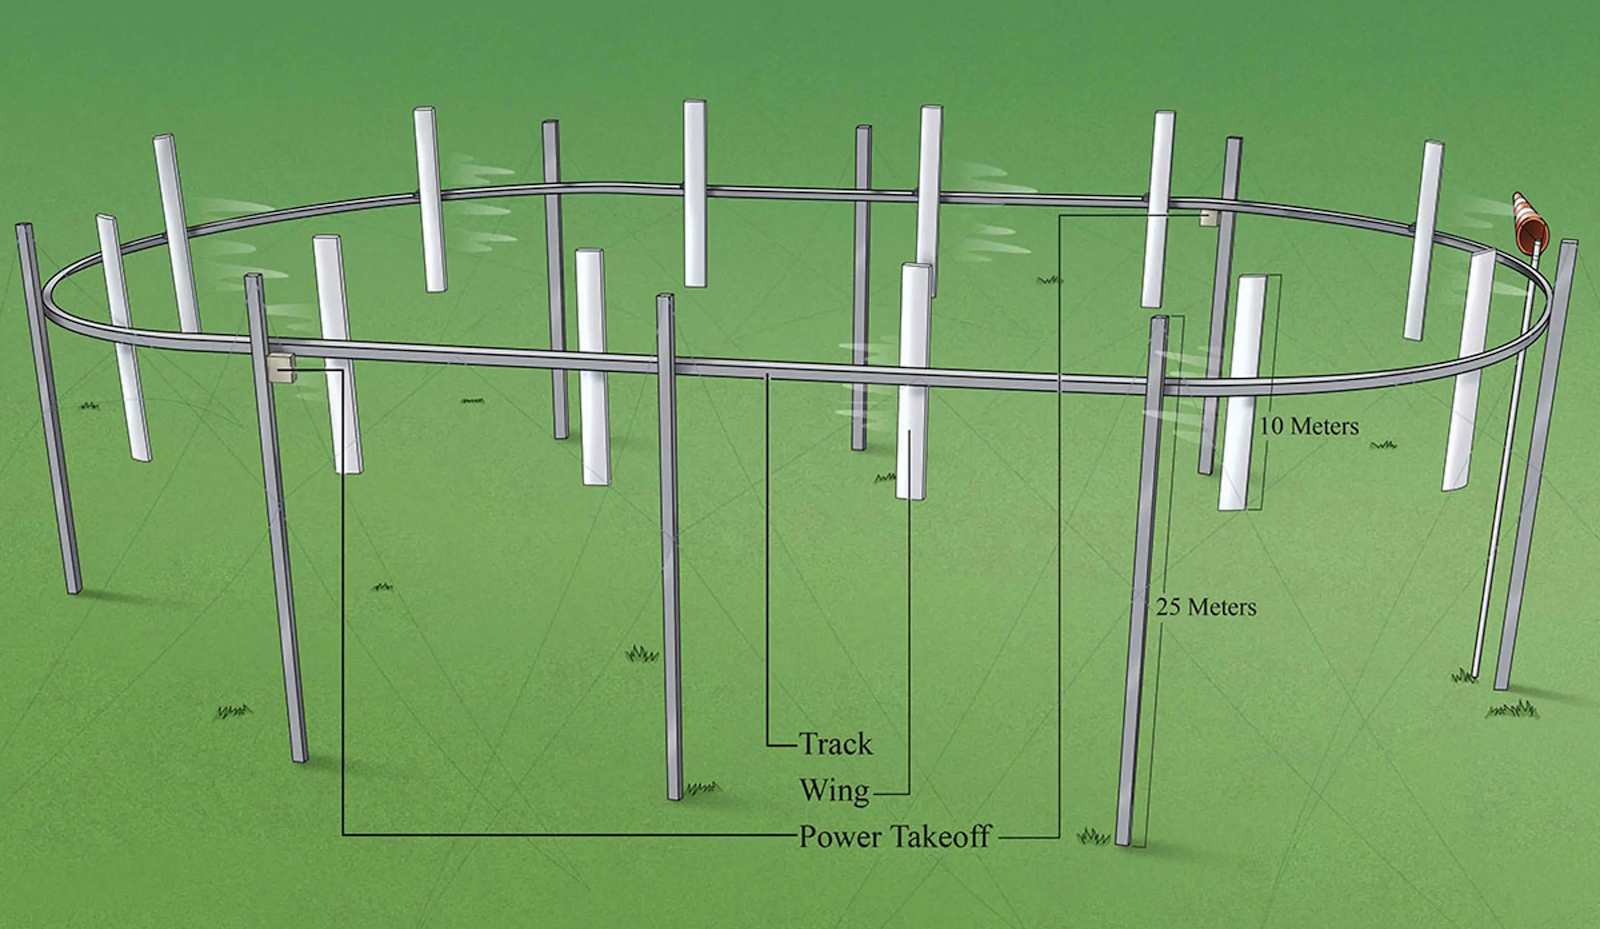 Les poteaux disposés en ovale permettent de faire tourner un câble qui se meut grâce à la force du vent sur les pales qu’il supporte. © Airloom